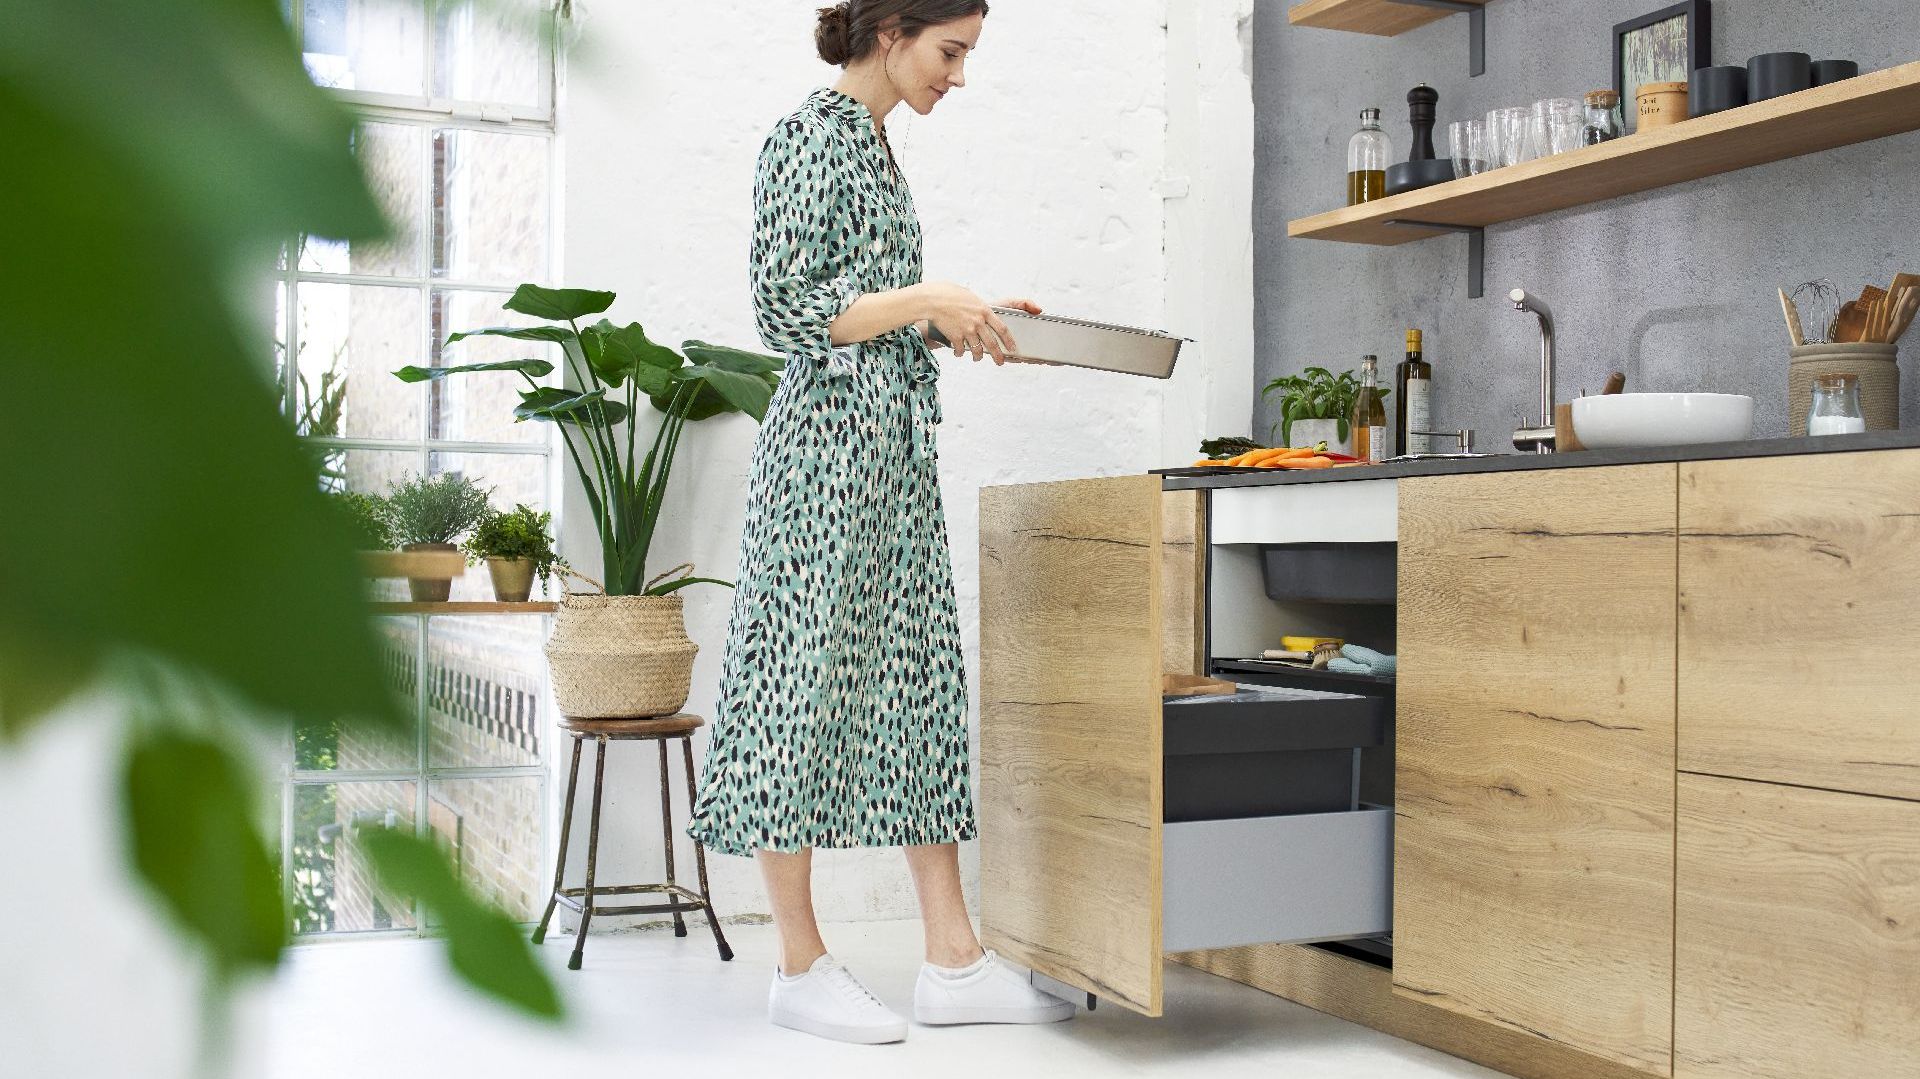 Nowy fajny pomysł do kuchni: sposób na strefę zmywania